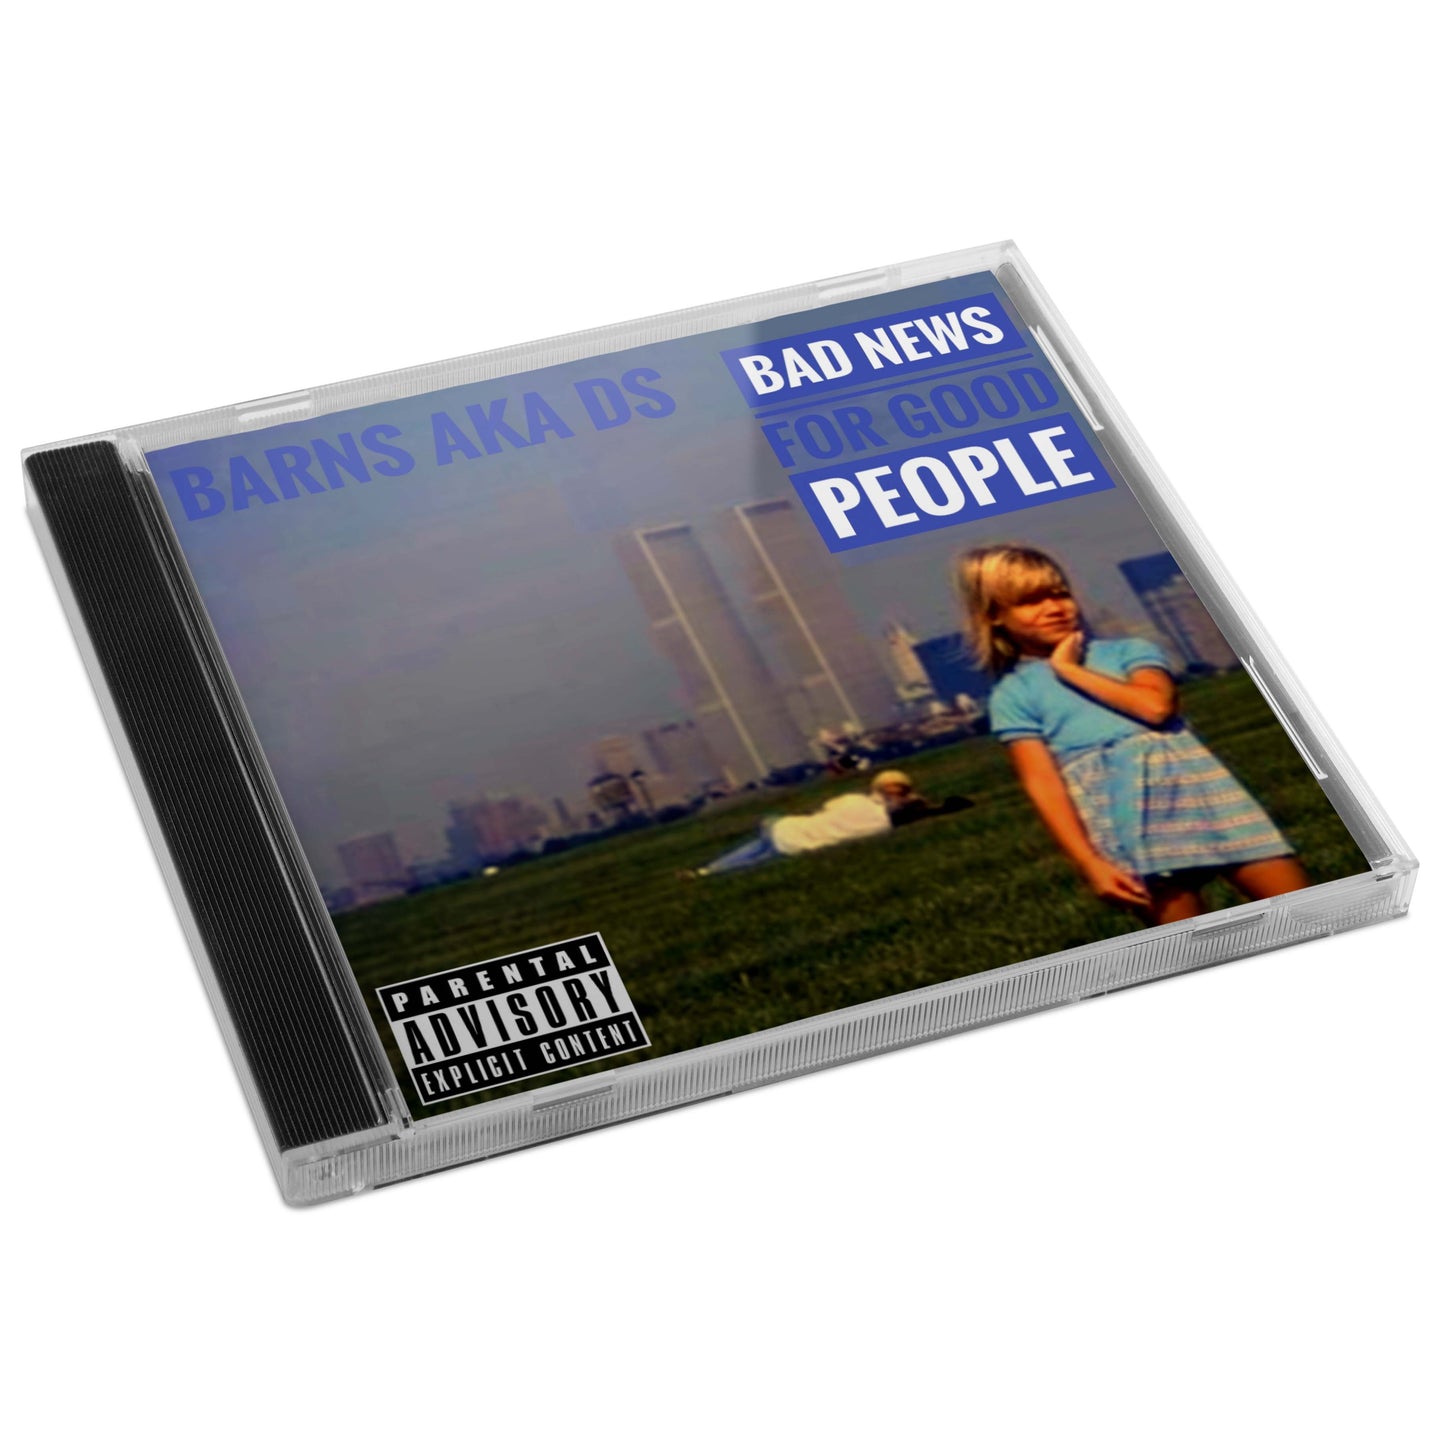 Barns - "Bad News For Good People" CD